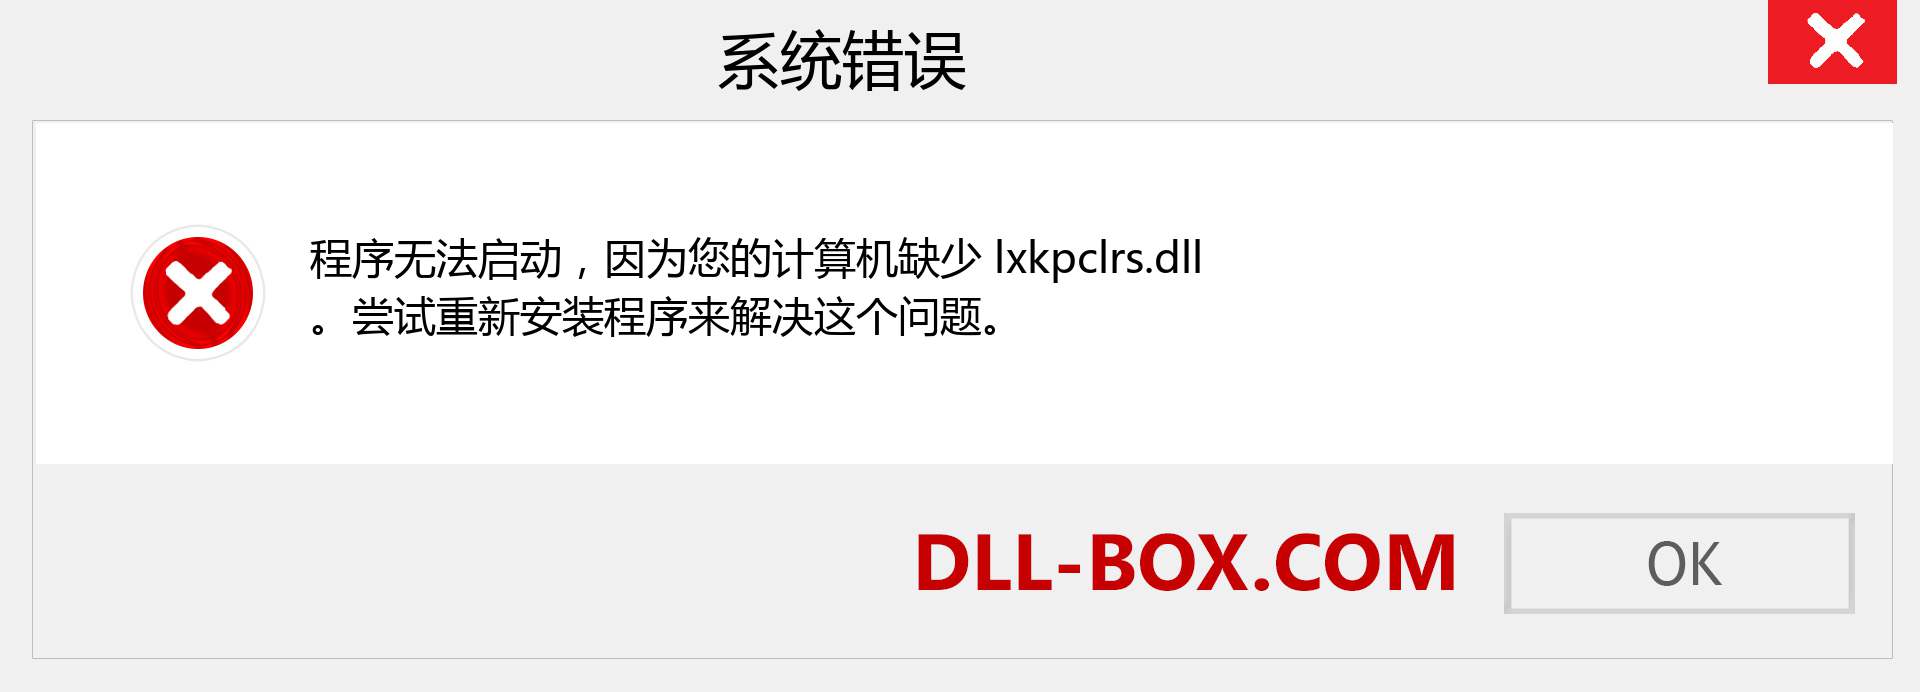 lxkpclrs.dll 文件丢失？。 适用于 Windows 7、8、10 的下载 - 修复 Windows、照片、图像上的 lxkpclrs dll 丢失错误